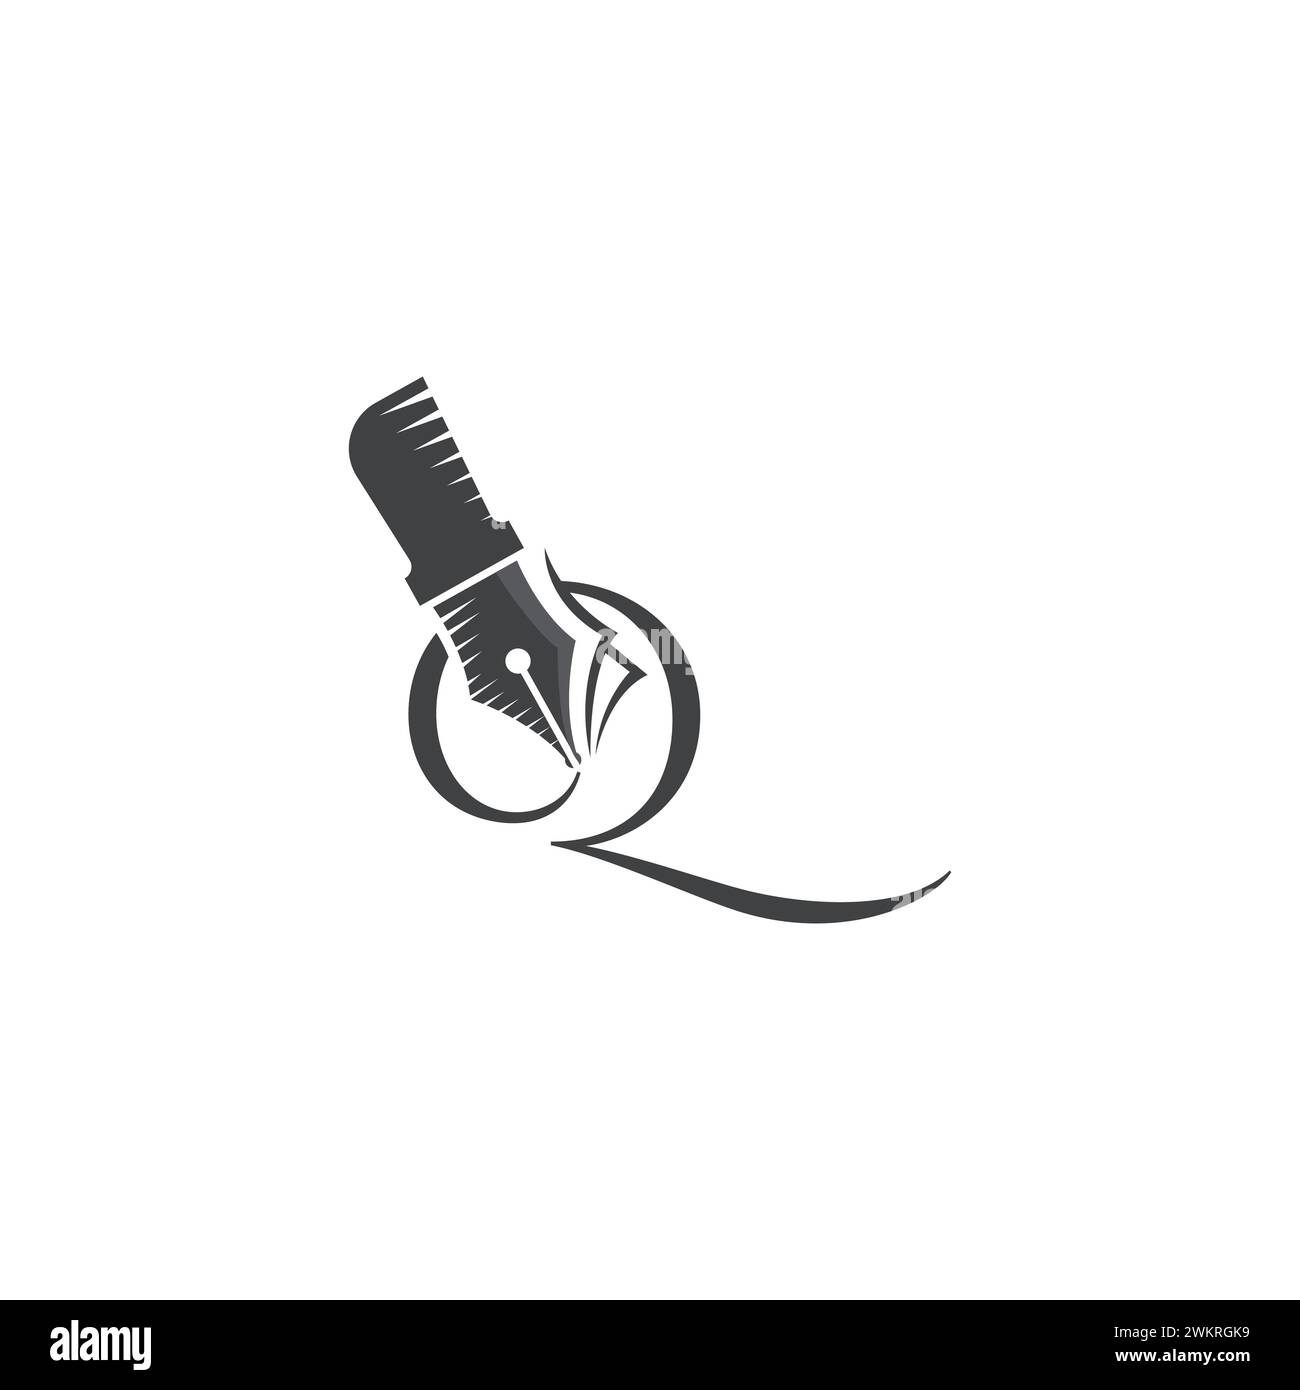 Icona classica del logo Q Pen. Logo della penna con la lettera iniziale q immagine della silhouette vettoriale. Design calligrafico Q a forma di matita. Illustrazione Vettoriale